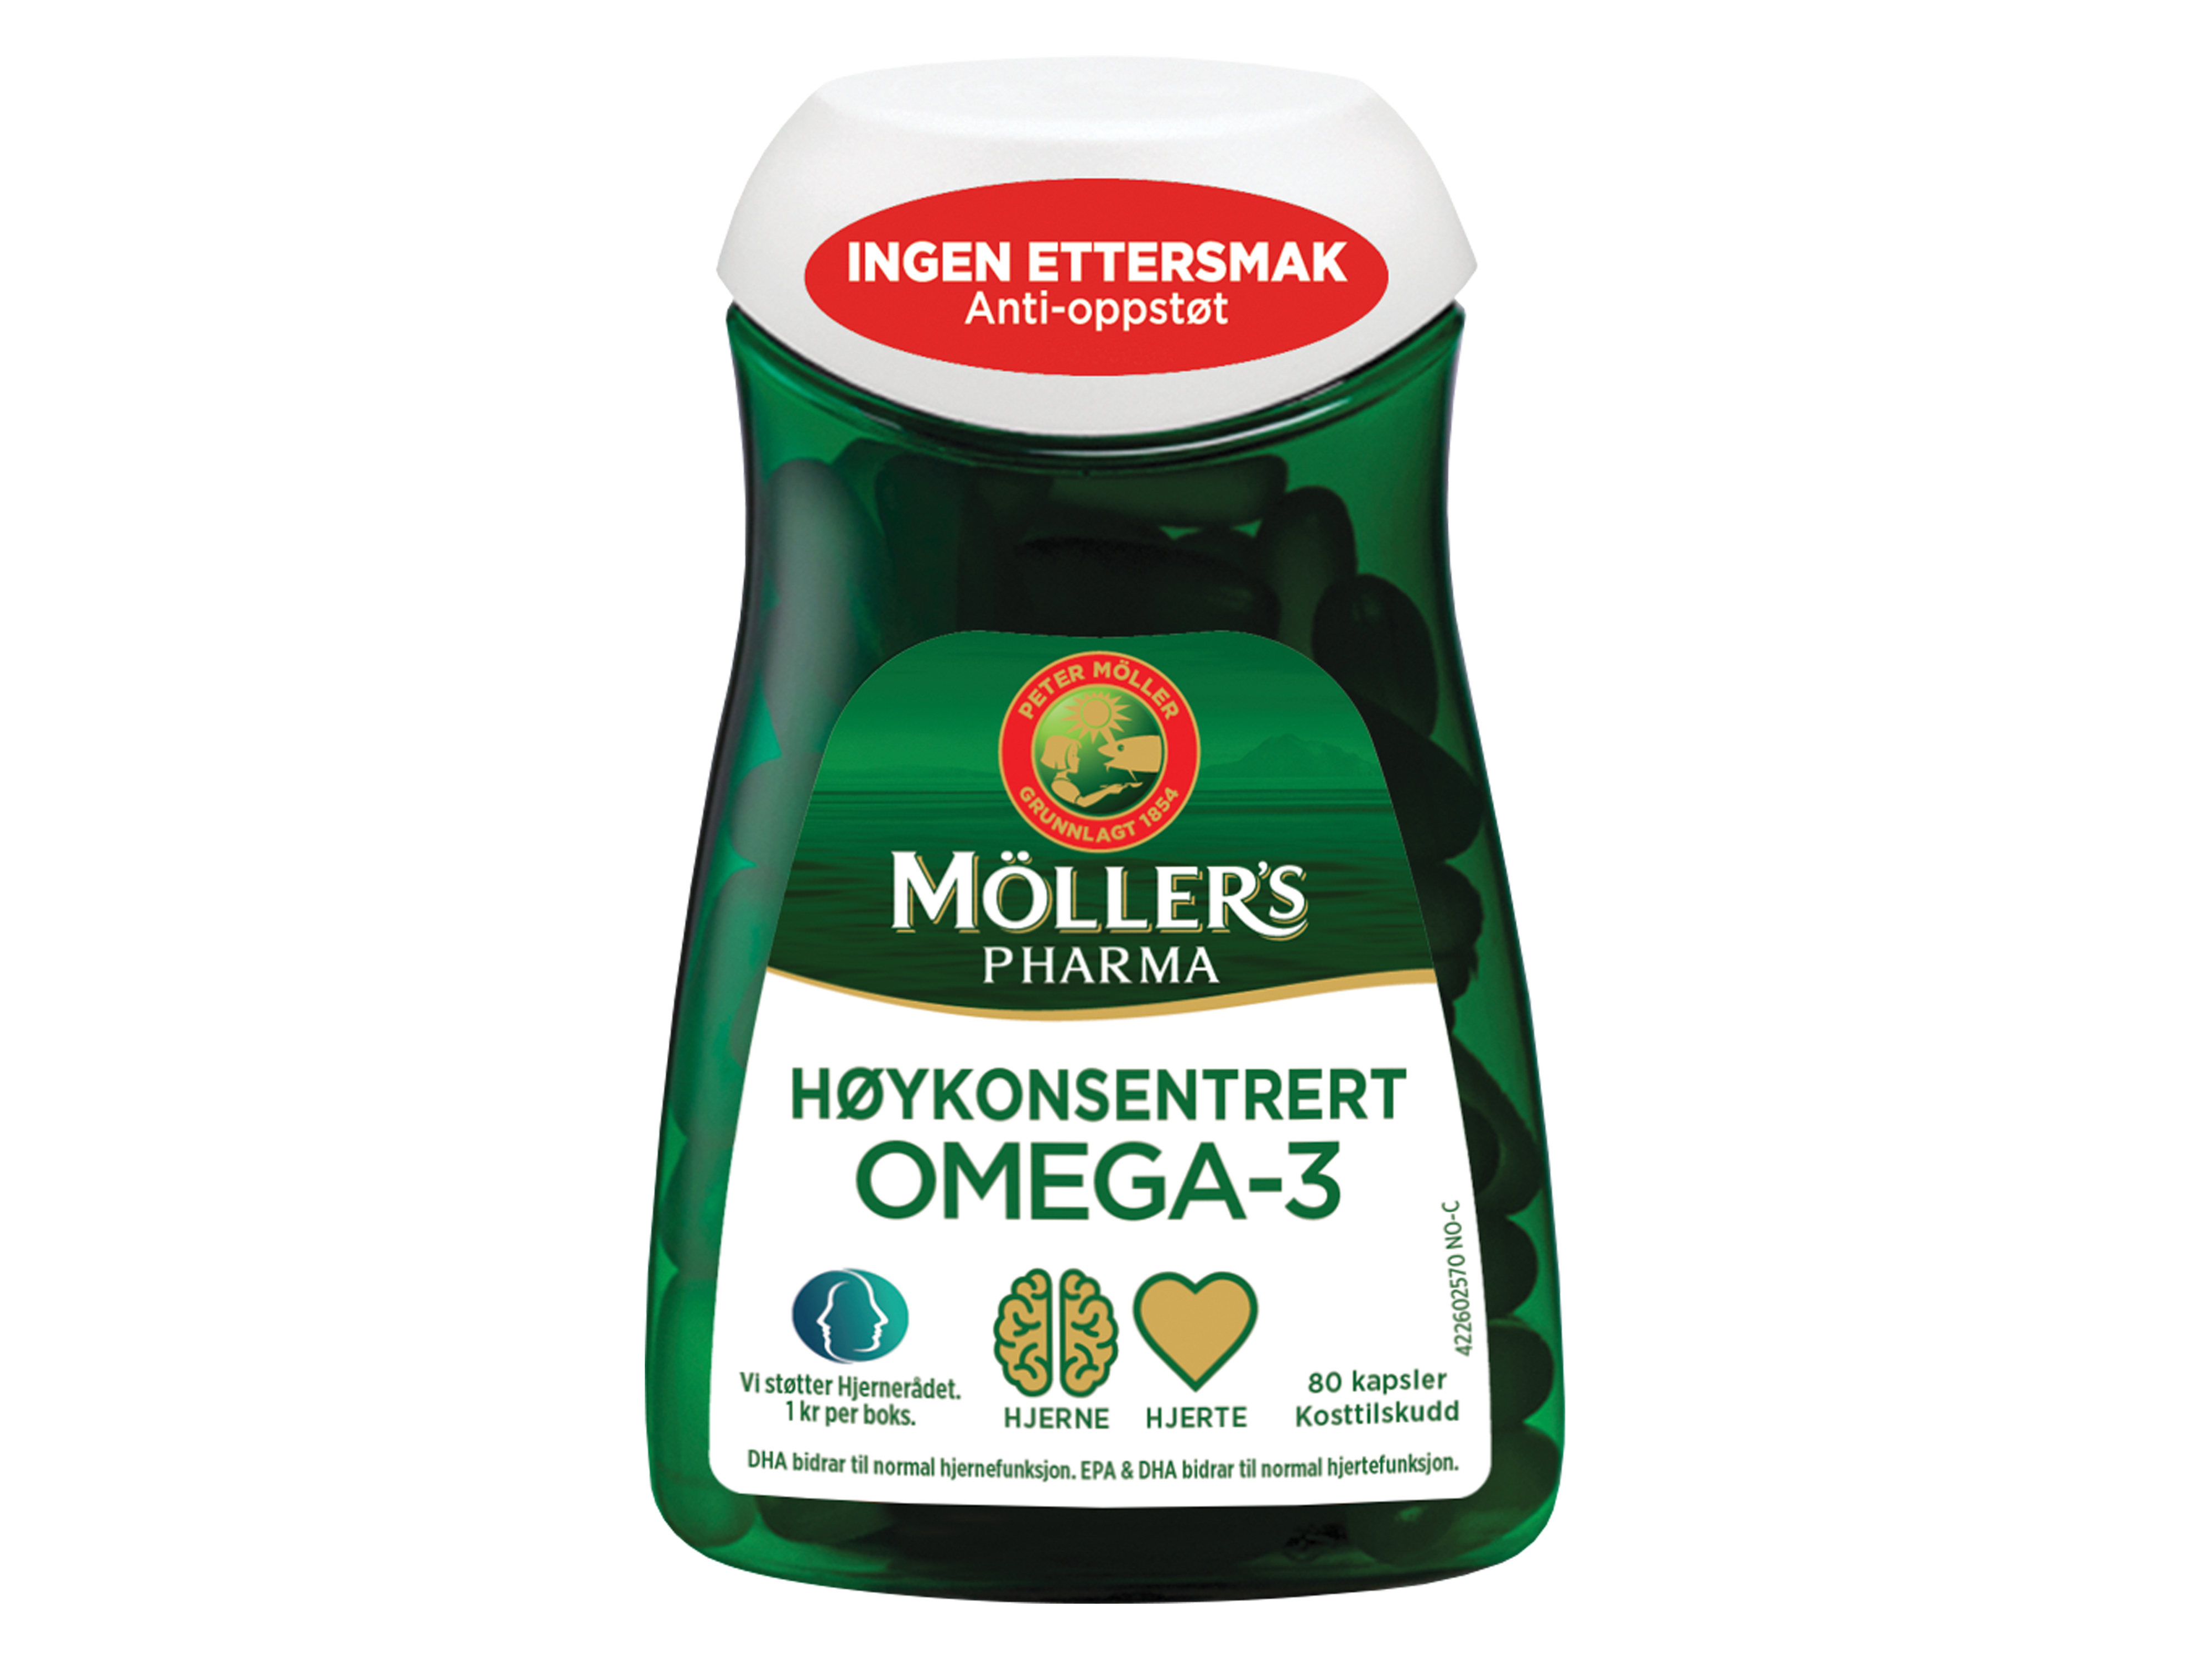 Möller's Pharma Høykonsentrert Omega-3, 80 kapsler